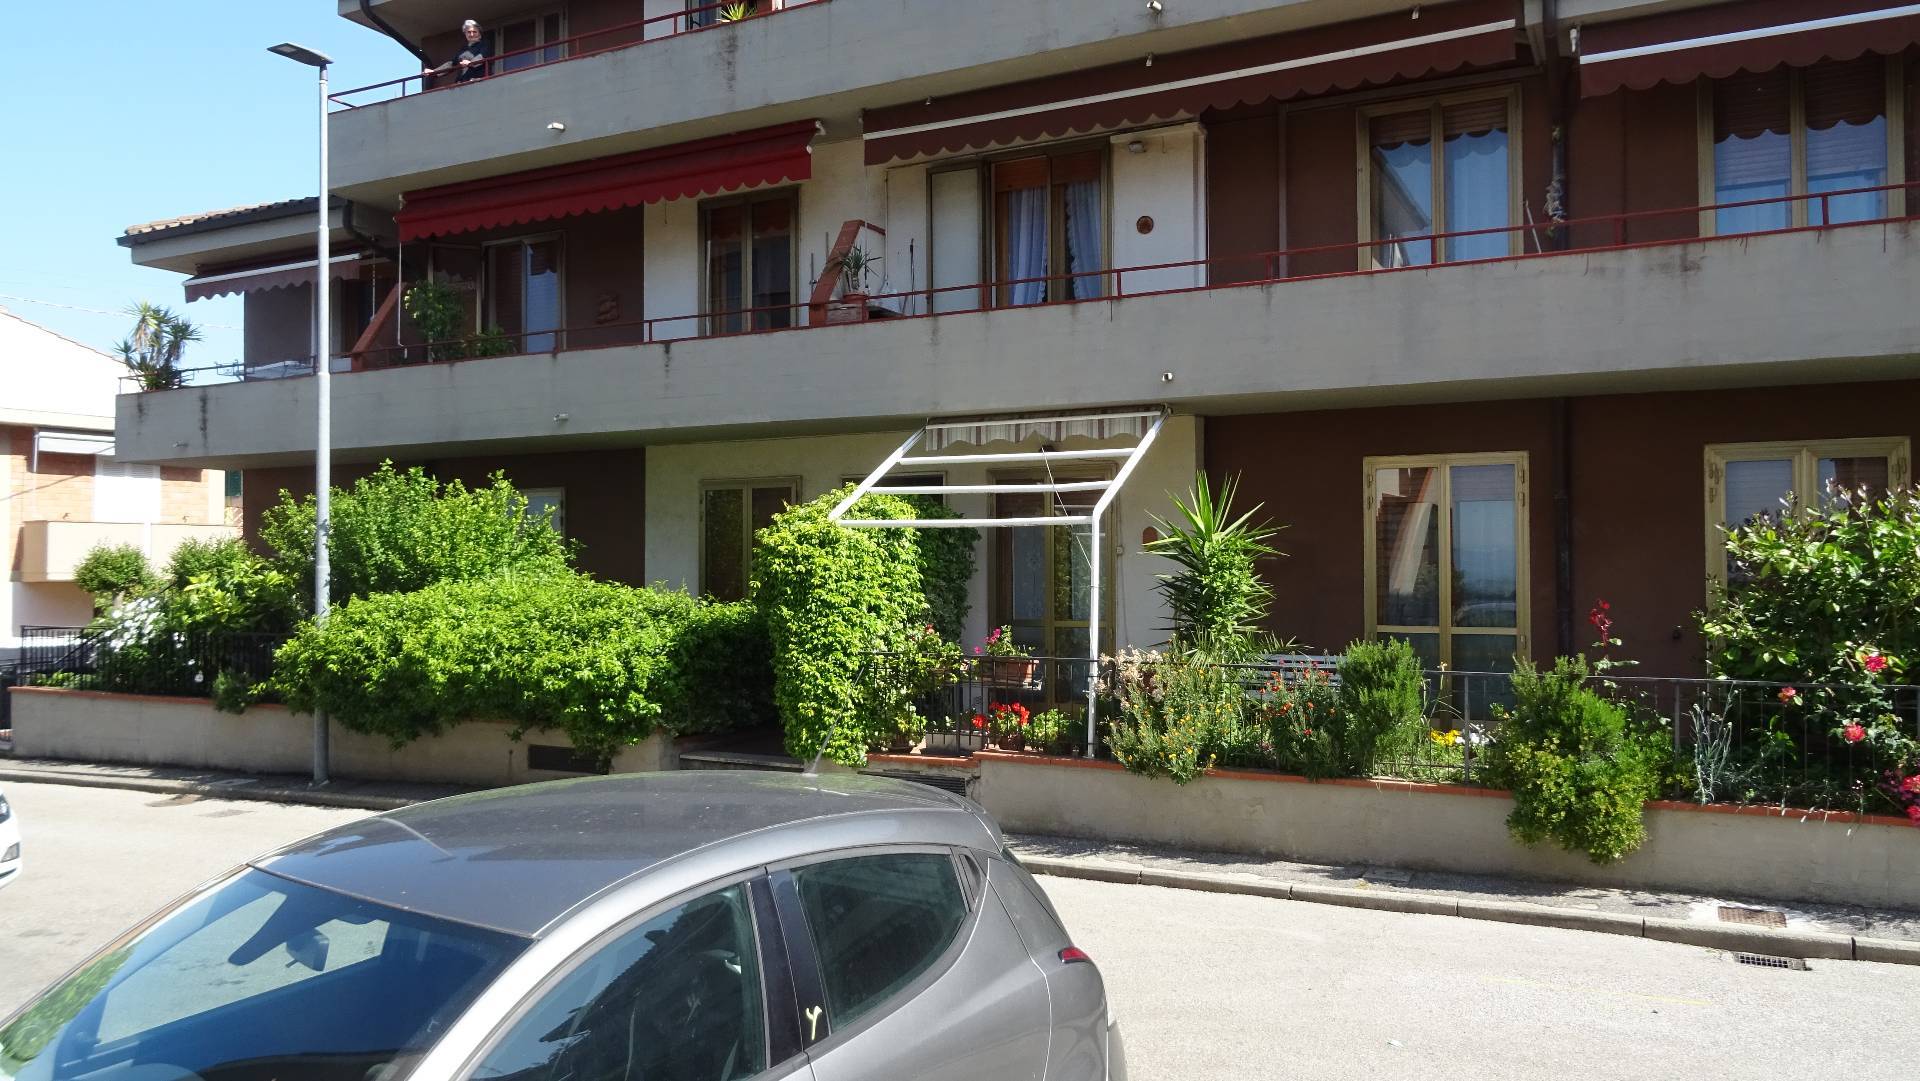 Appartamento in vendita a Montespertoli, 4 locali, prezzo € 170.000 | PortaleAgenzieImmobiliari.it